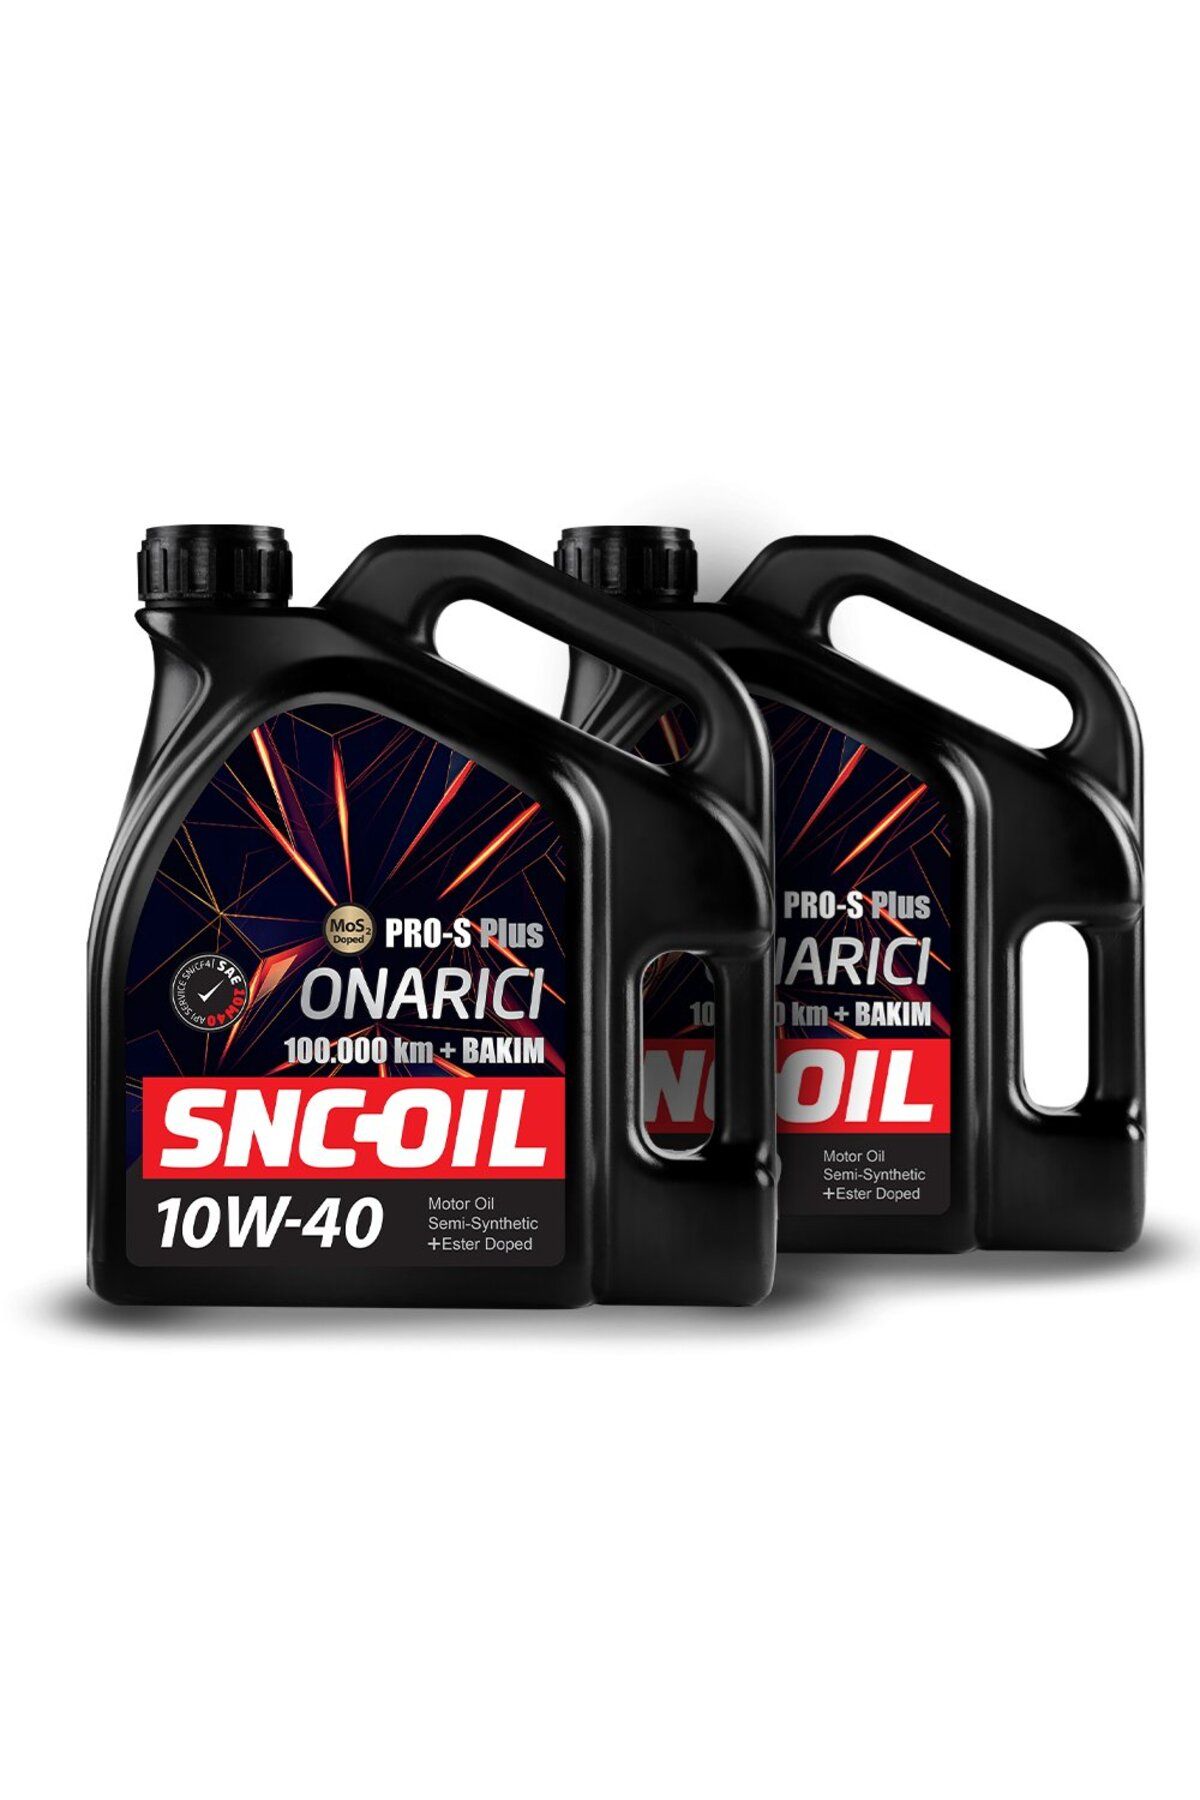 snc Icon Group - SNC-OIL 100.000 Km + Bakım Pro-S Plus Onarıcı 10W-40 Motor Yağı (8LT)